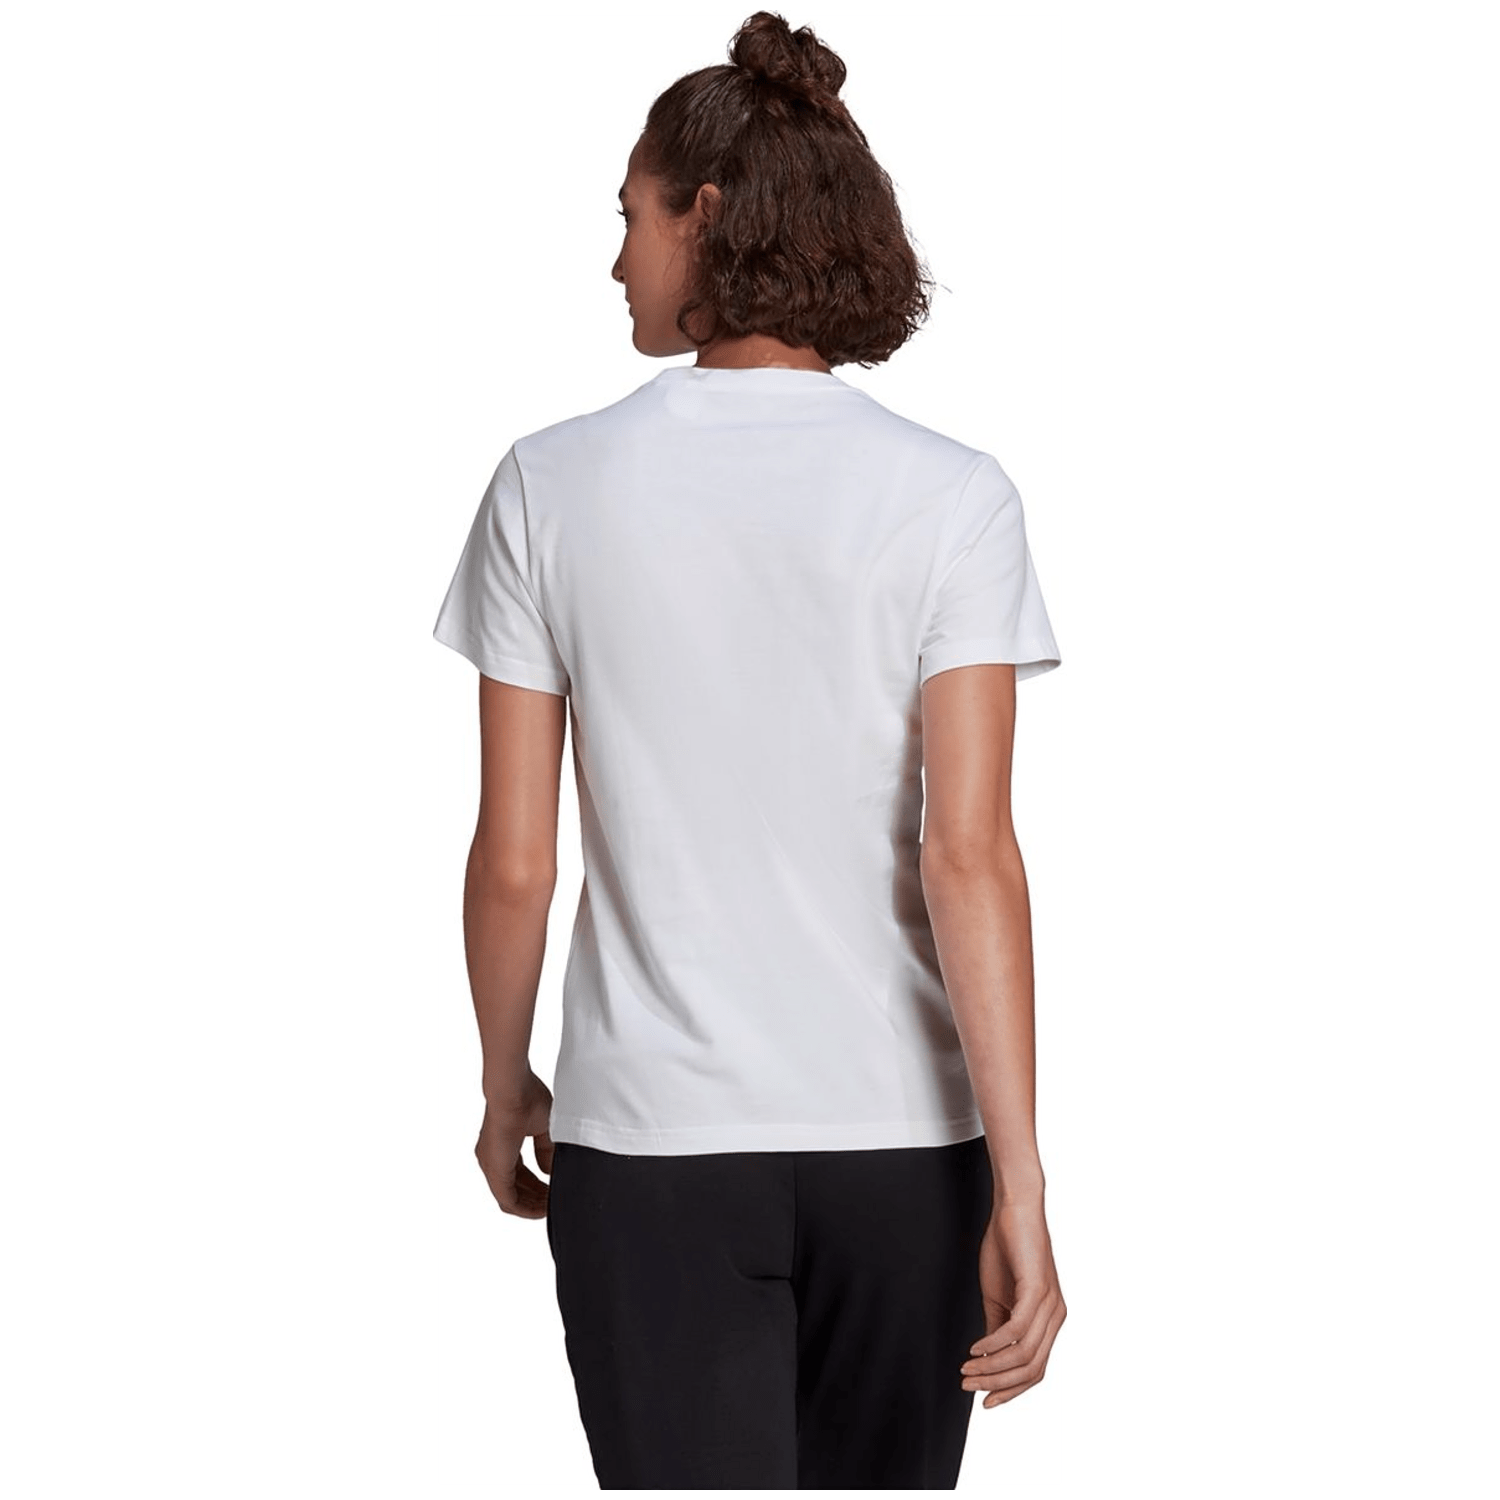 Adidas Loungewear Essentials Logo T-Shirt Damen